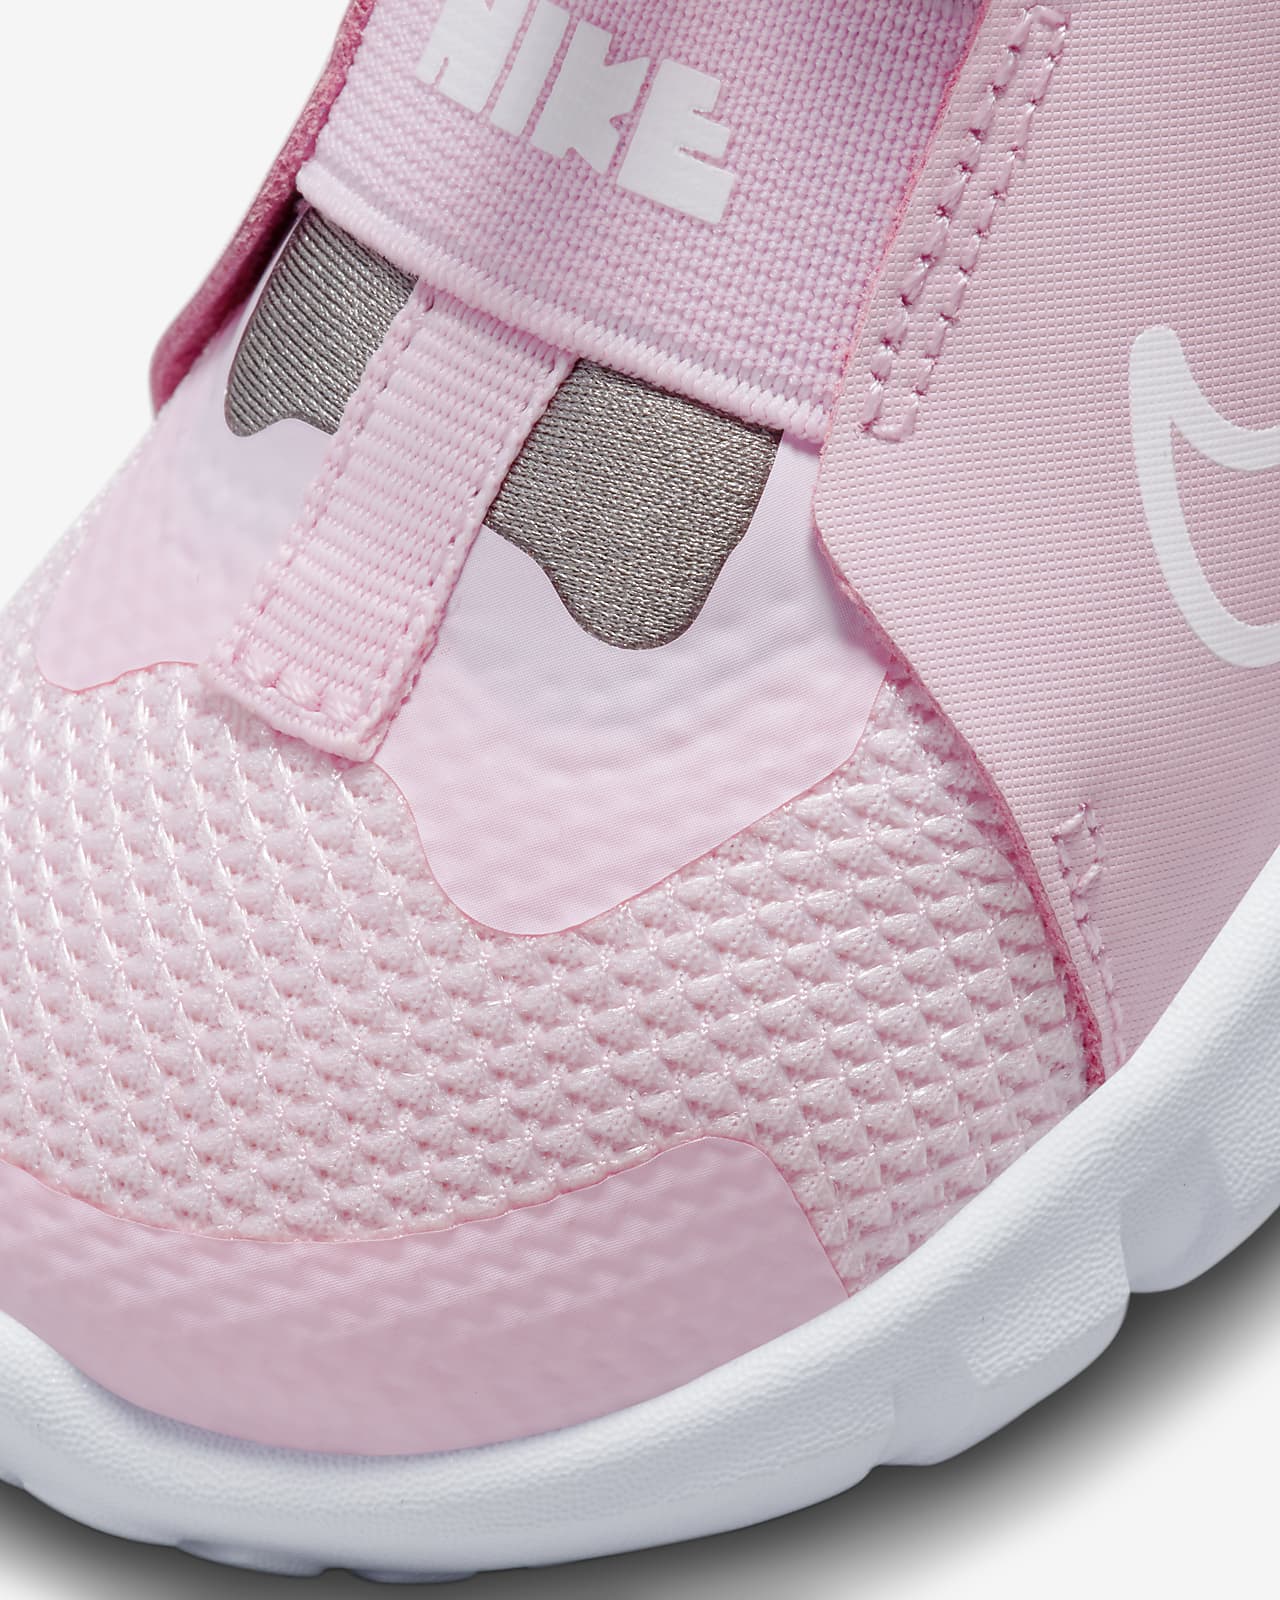 Nike Runner 2 Baby/Toddler Nike.com